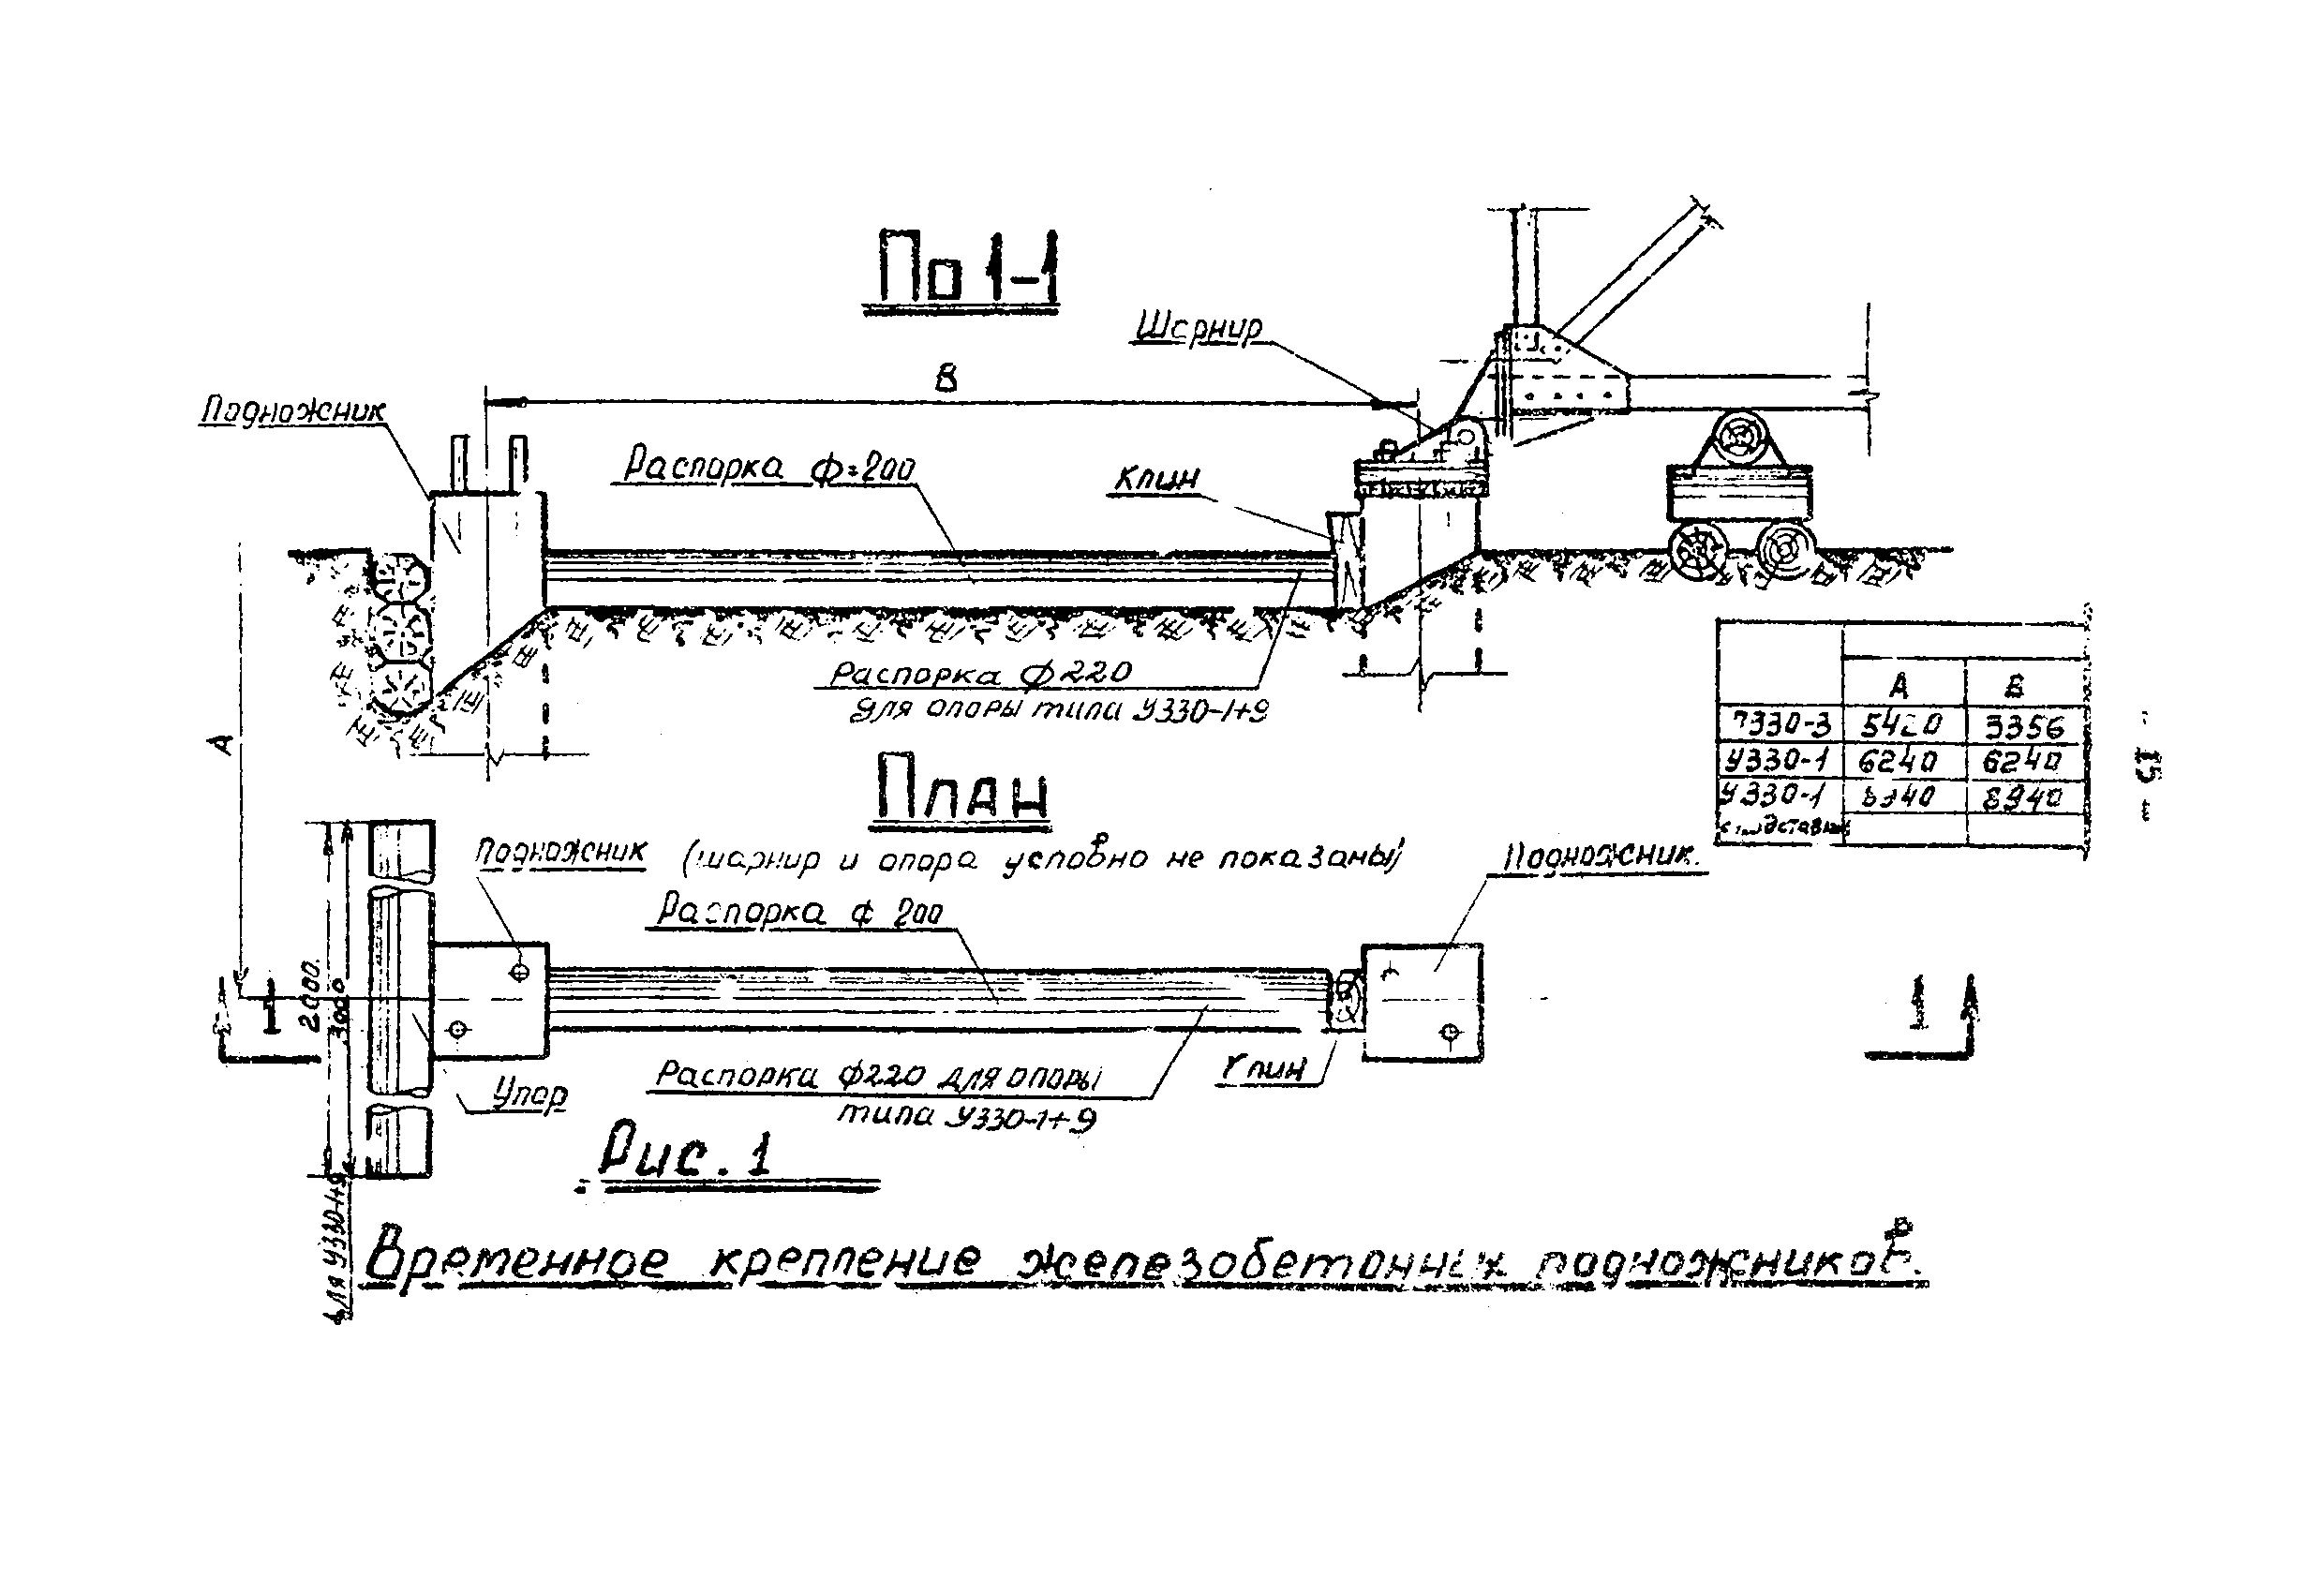 ТТК К-III-27-7